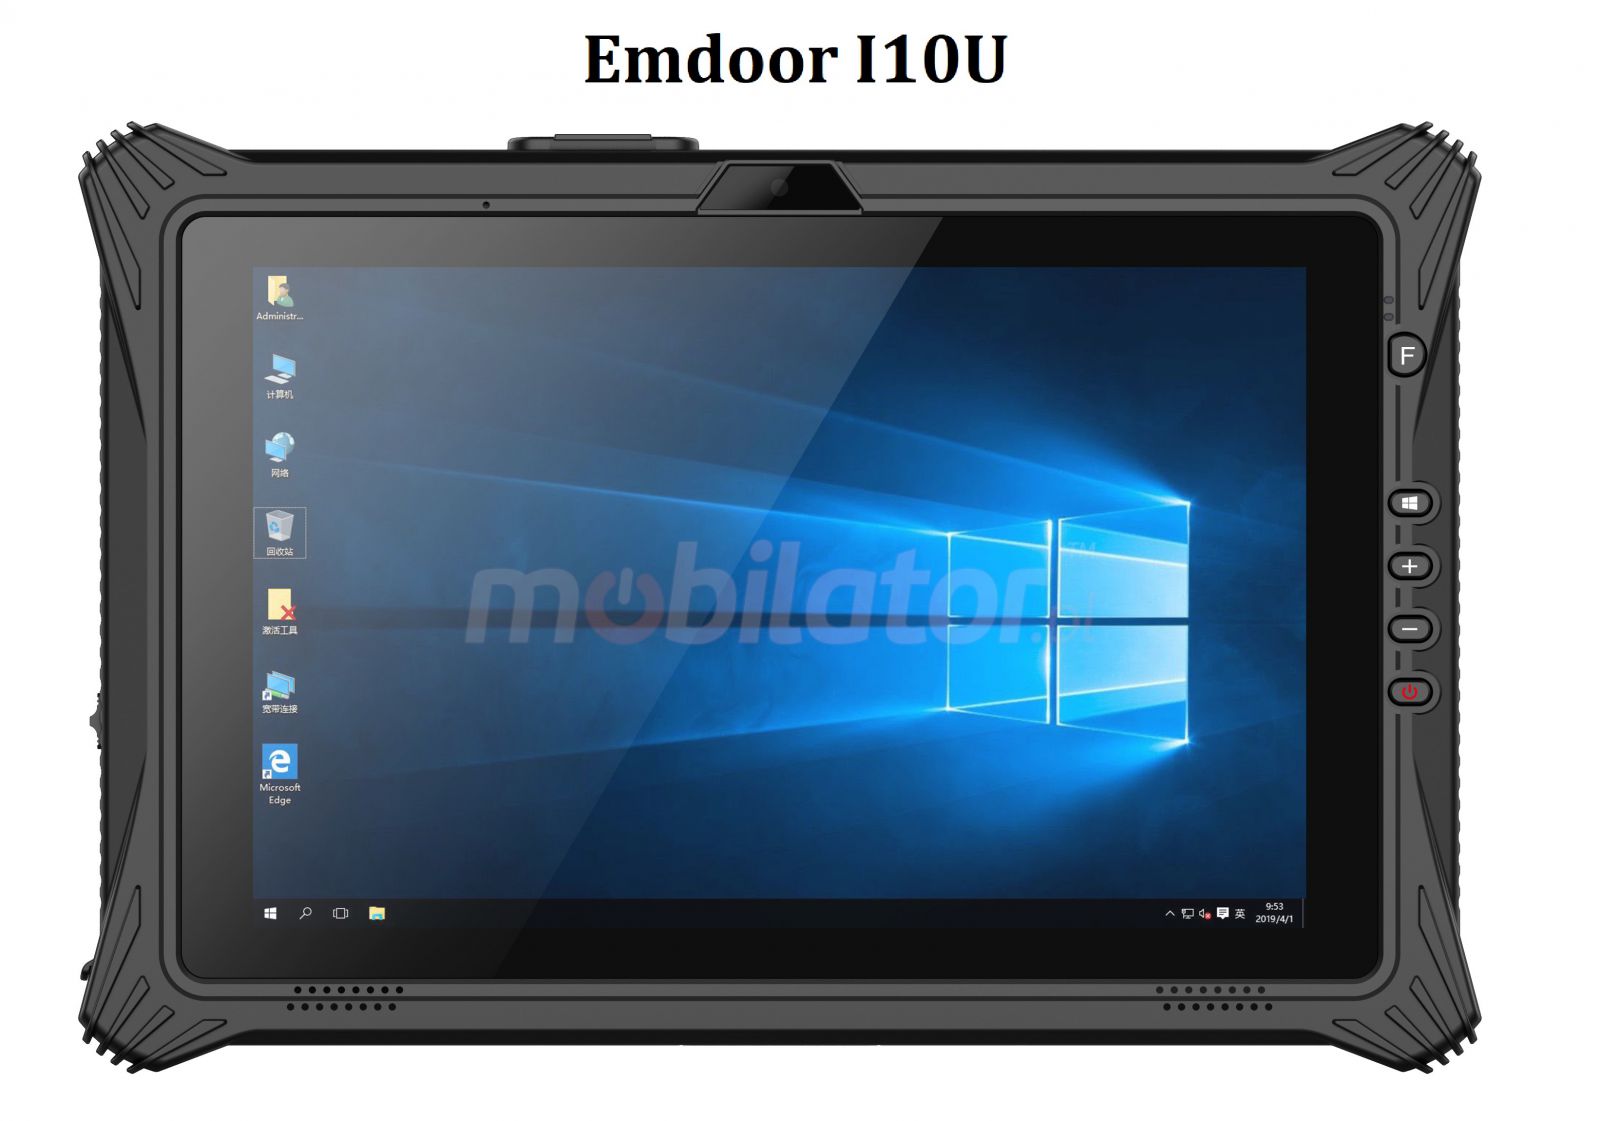 Emdoor I10U v.17 - Pyoodporny 10-calowy tablet z procesorem i7, z NFC, Windows 10 Home S, Bluetooth 4.2, skanerem kodw kreskowych 1D MOTO, 16GB RAM i 256GB SSD